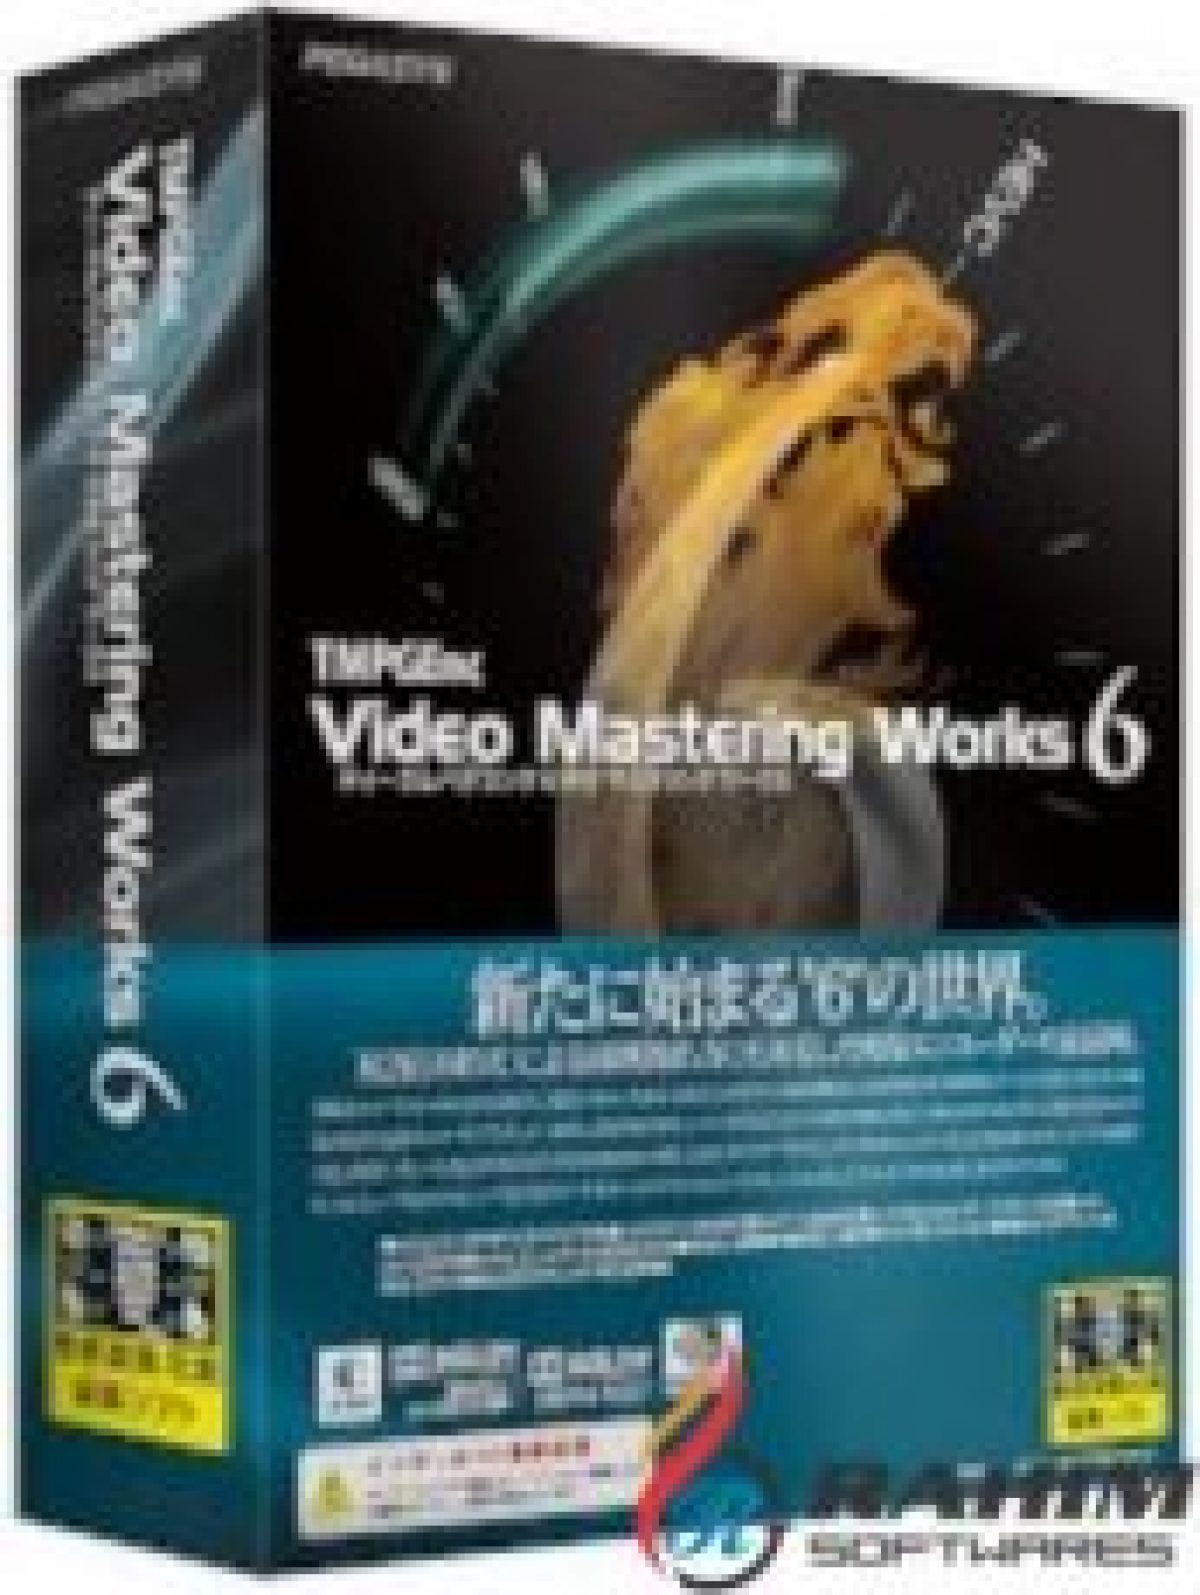 tmpgenc video mastering works 6 full torrent